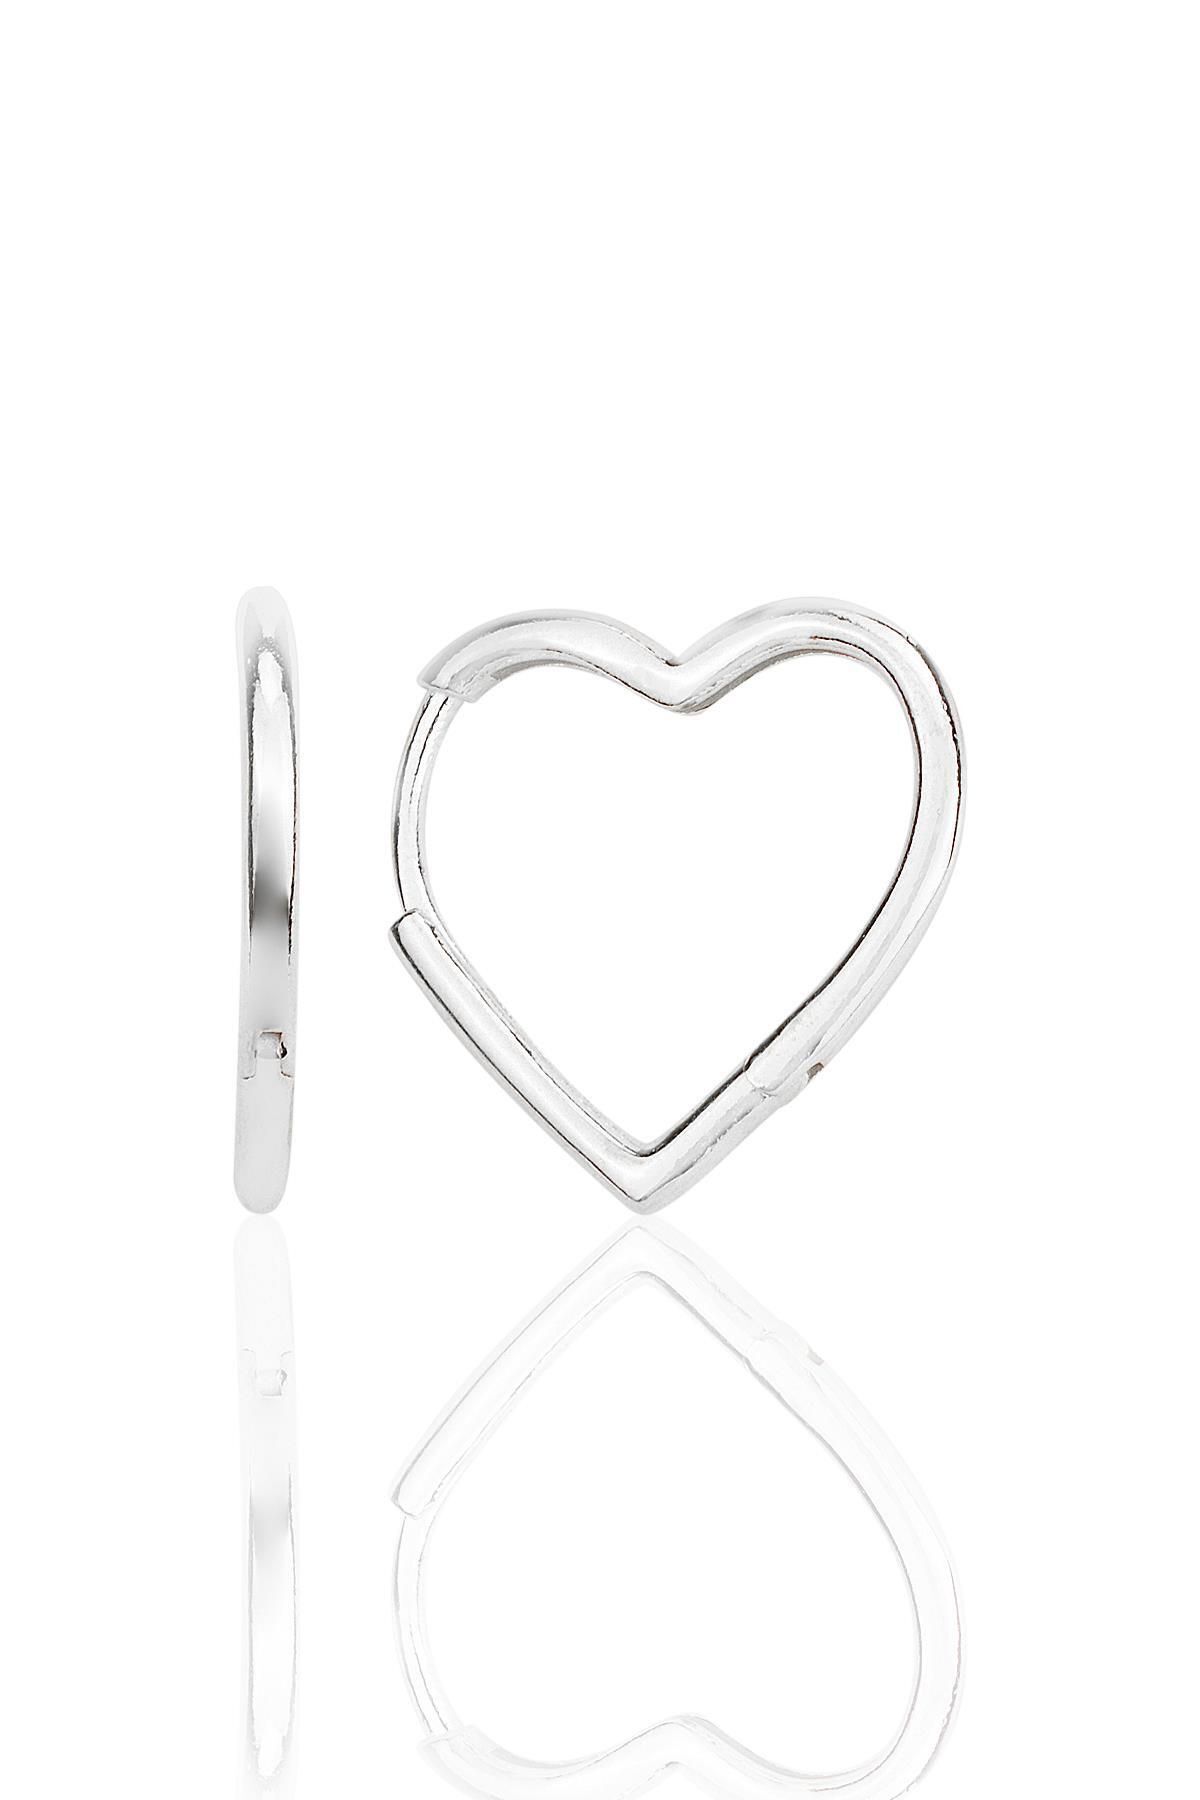 Söğütlü Silver Gümüş rodyumlu özel tasarım 20 mm kalp küpe SGTL12282RODAJ